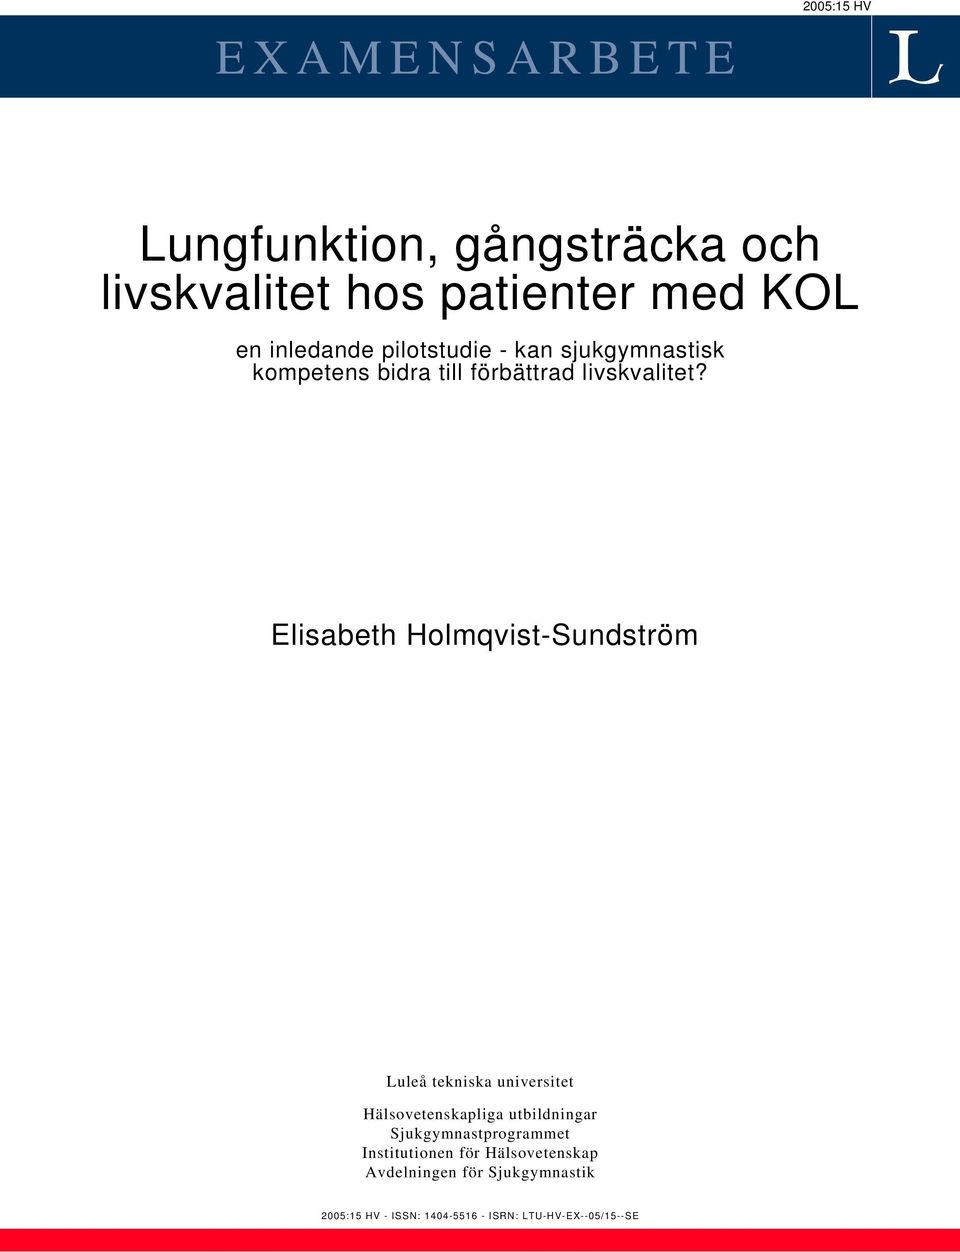 Elisabeth Holmqvist-Sundström Luleå tekniska universitet Hälsovetenskapliga utbildningar